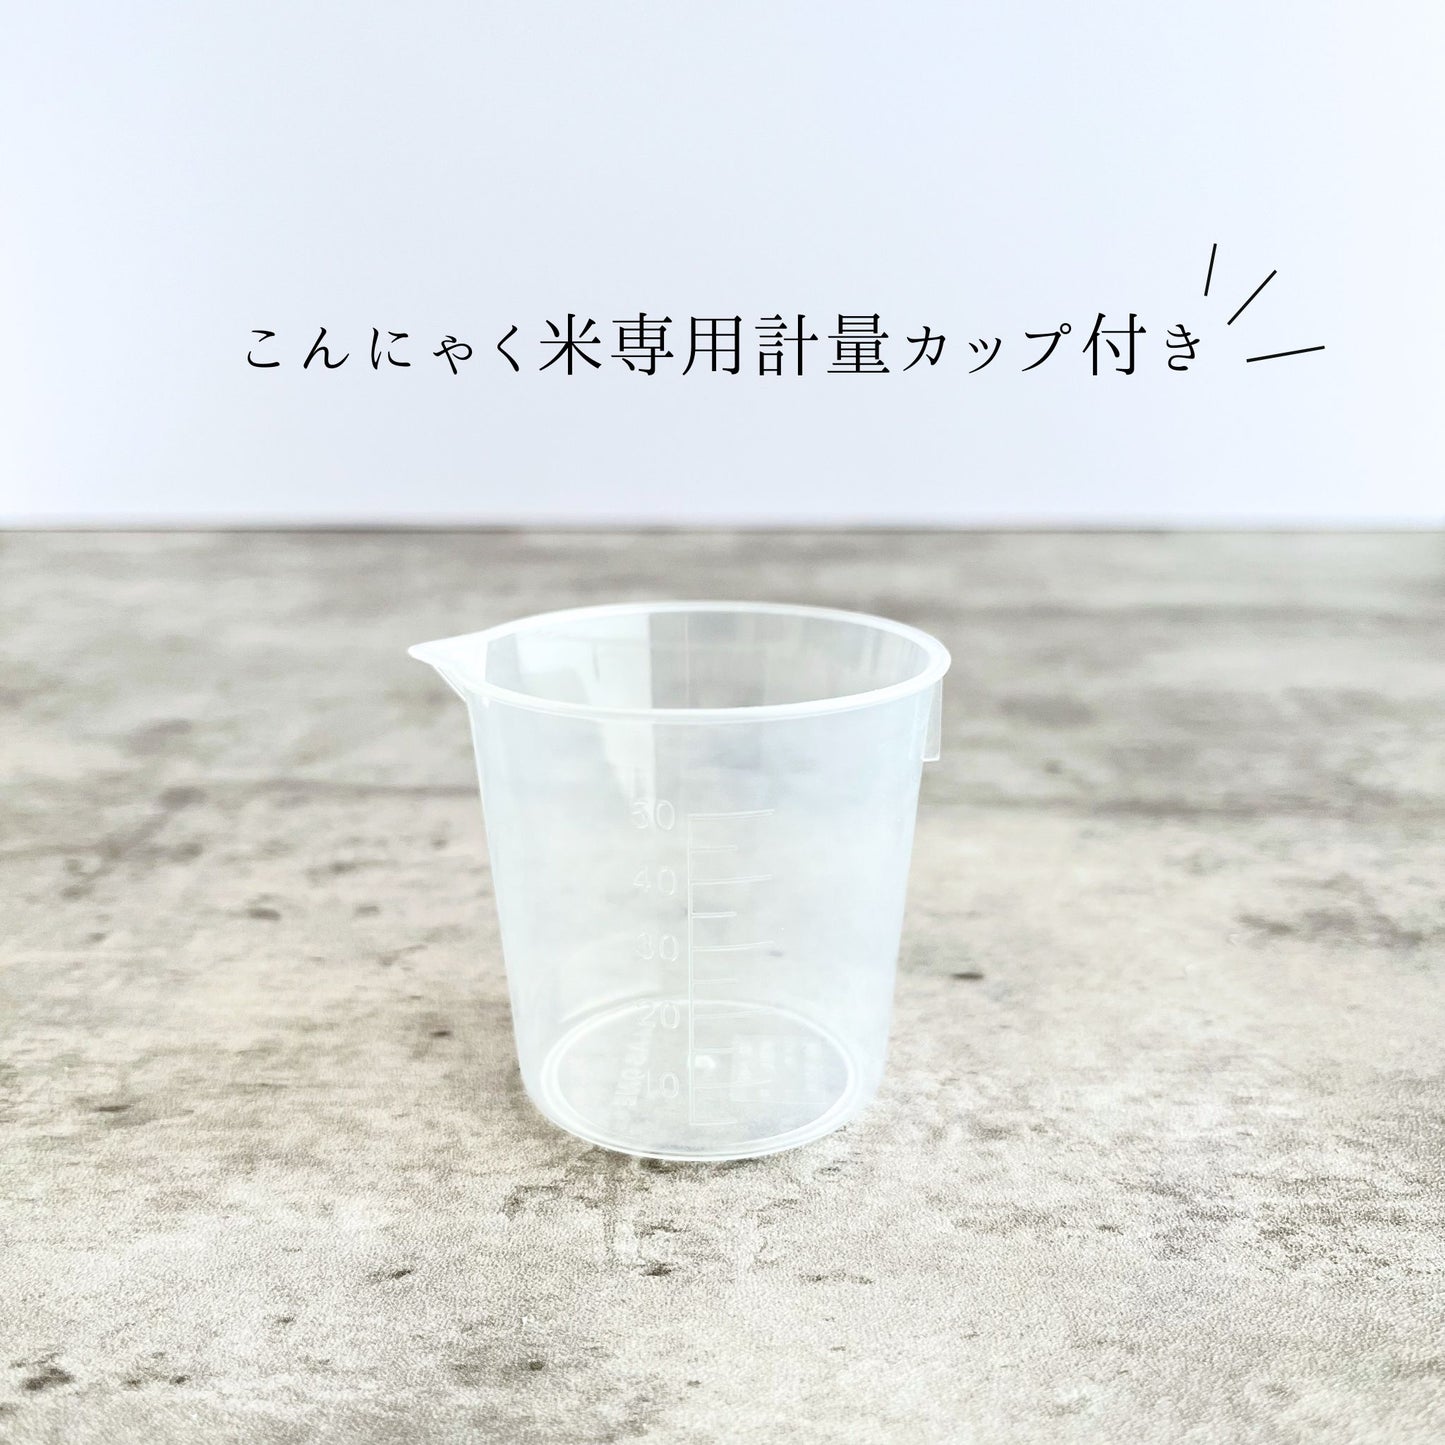 【こんにゃく米&こんにゃく麺】SHINOBI 糖質制限セット